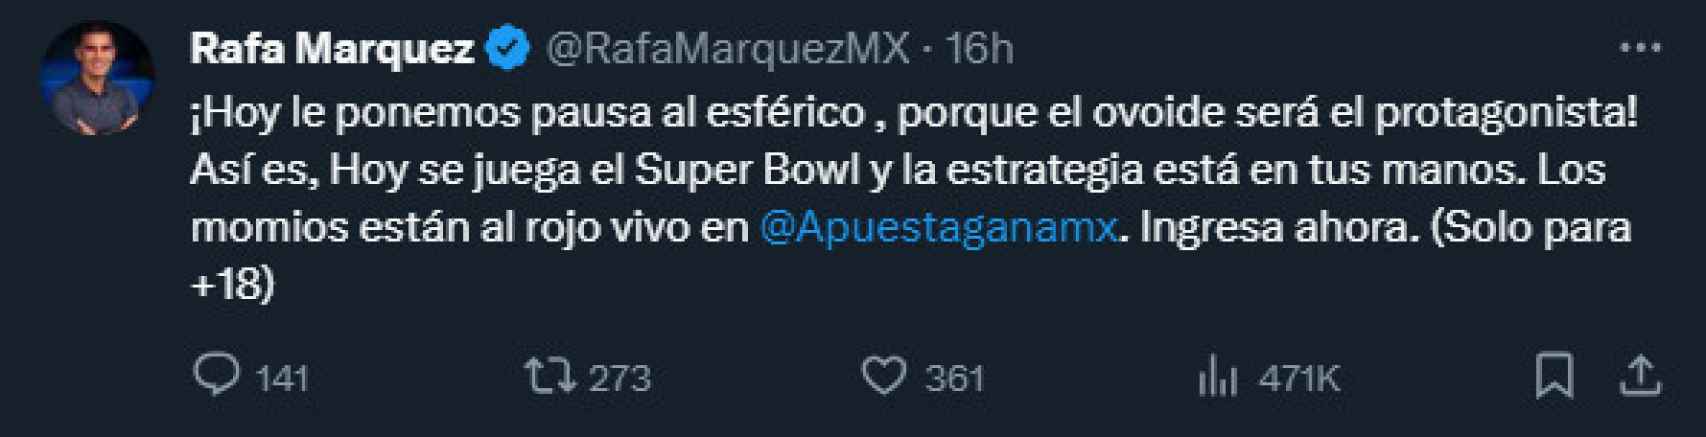 El tuit de Rafa Márquez sobre apostar en el Super Bowl